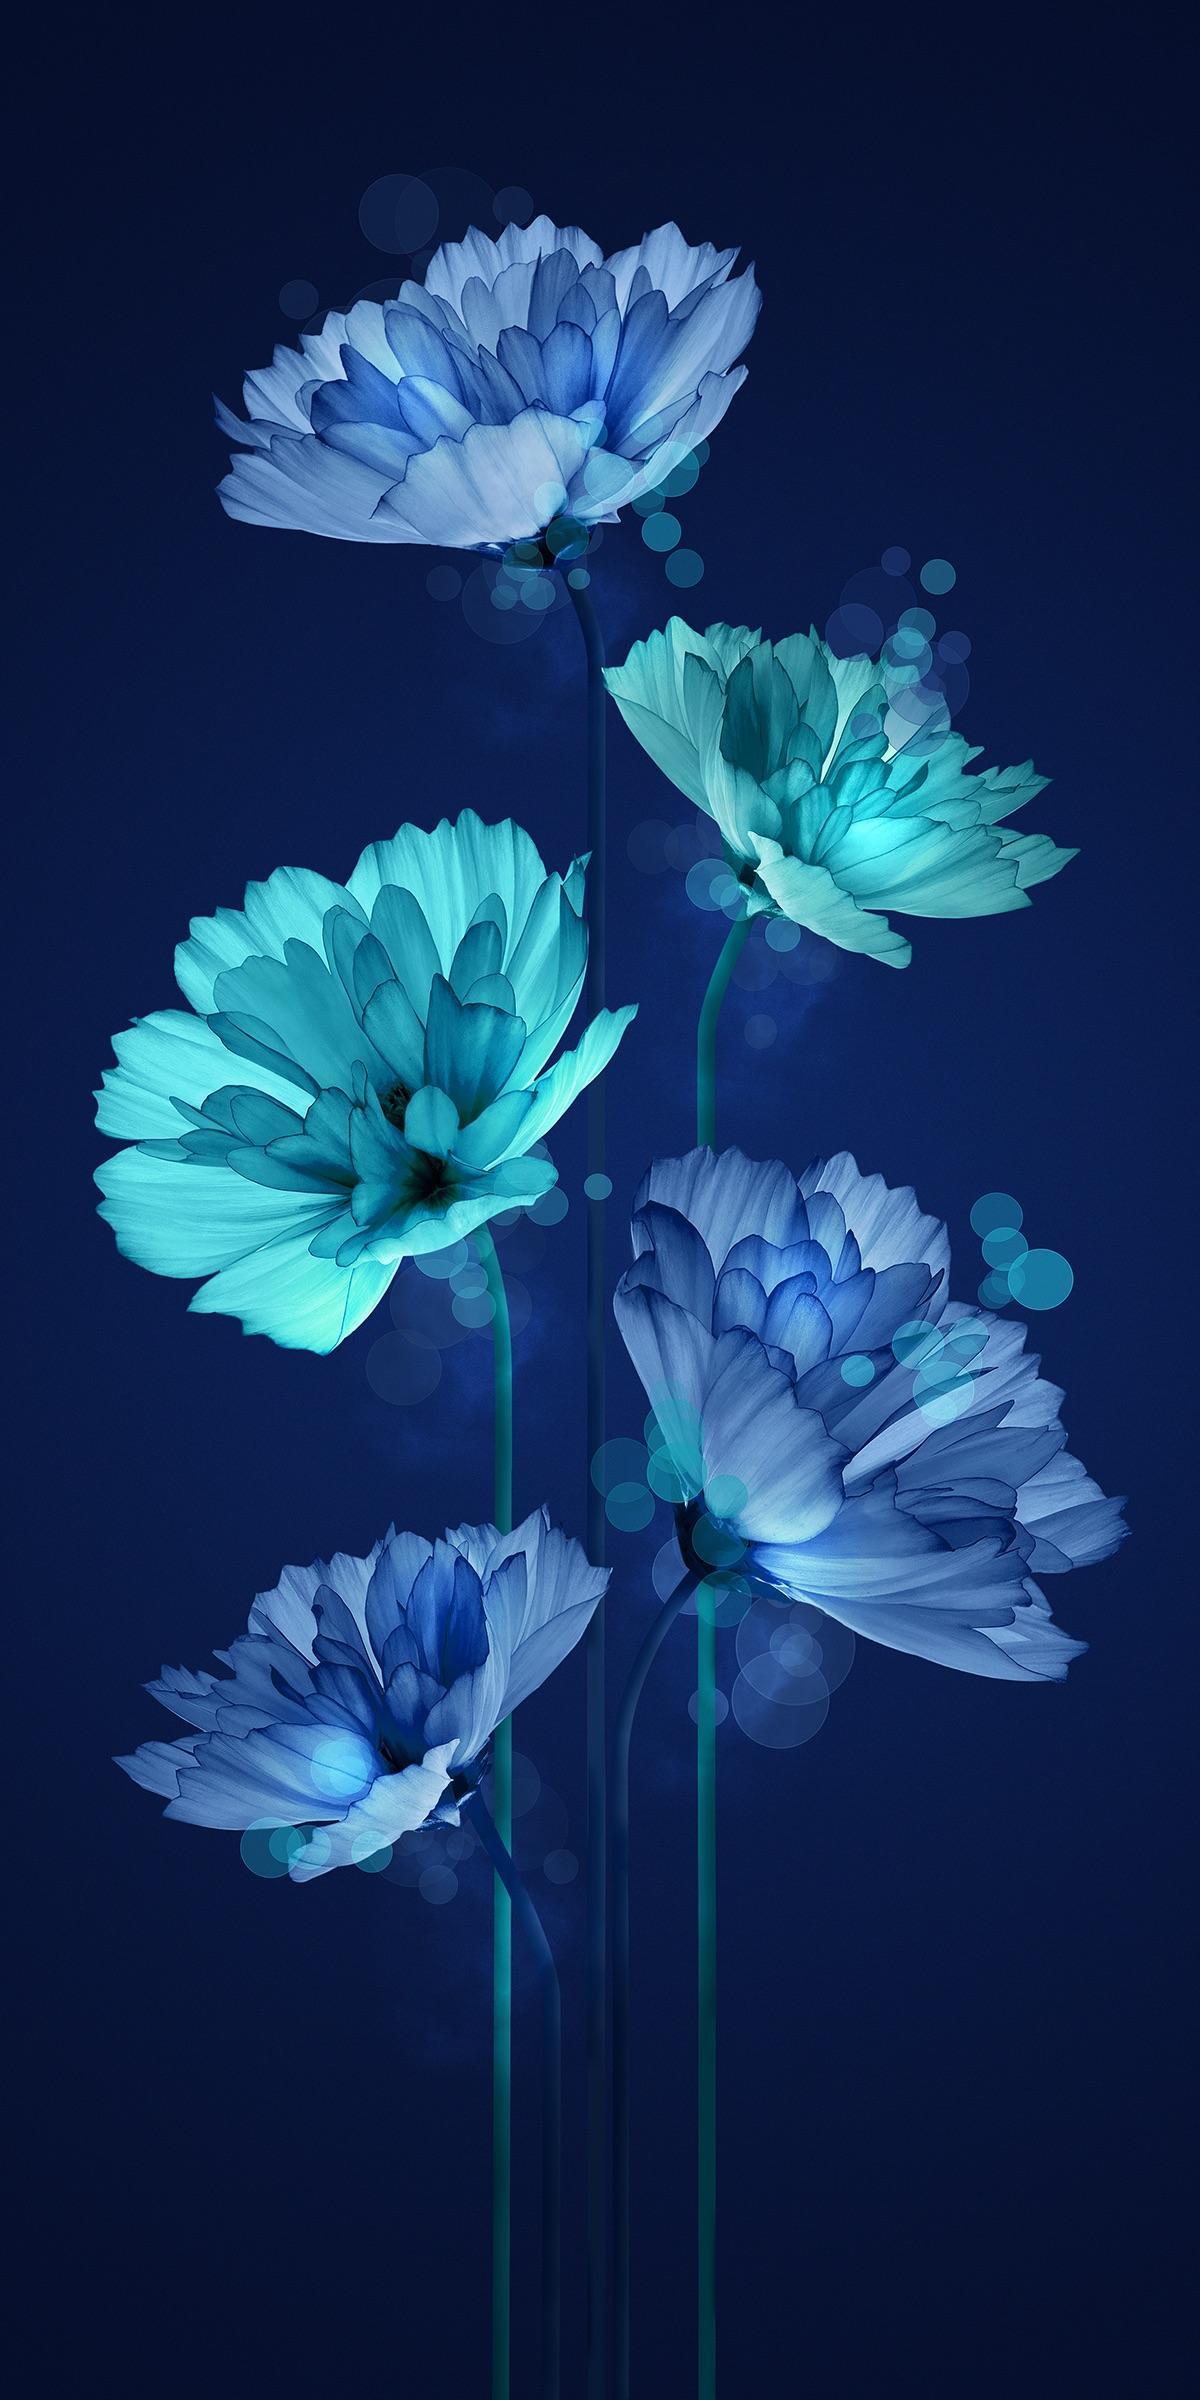 Fair Flowers. iPhone X Wallpaper X Wallpaper HD